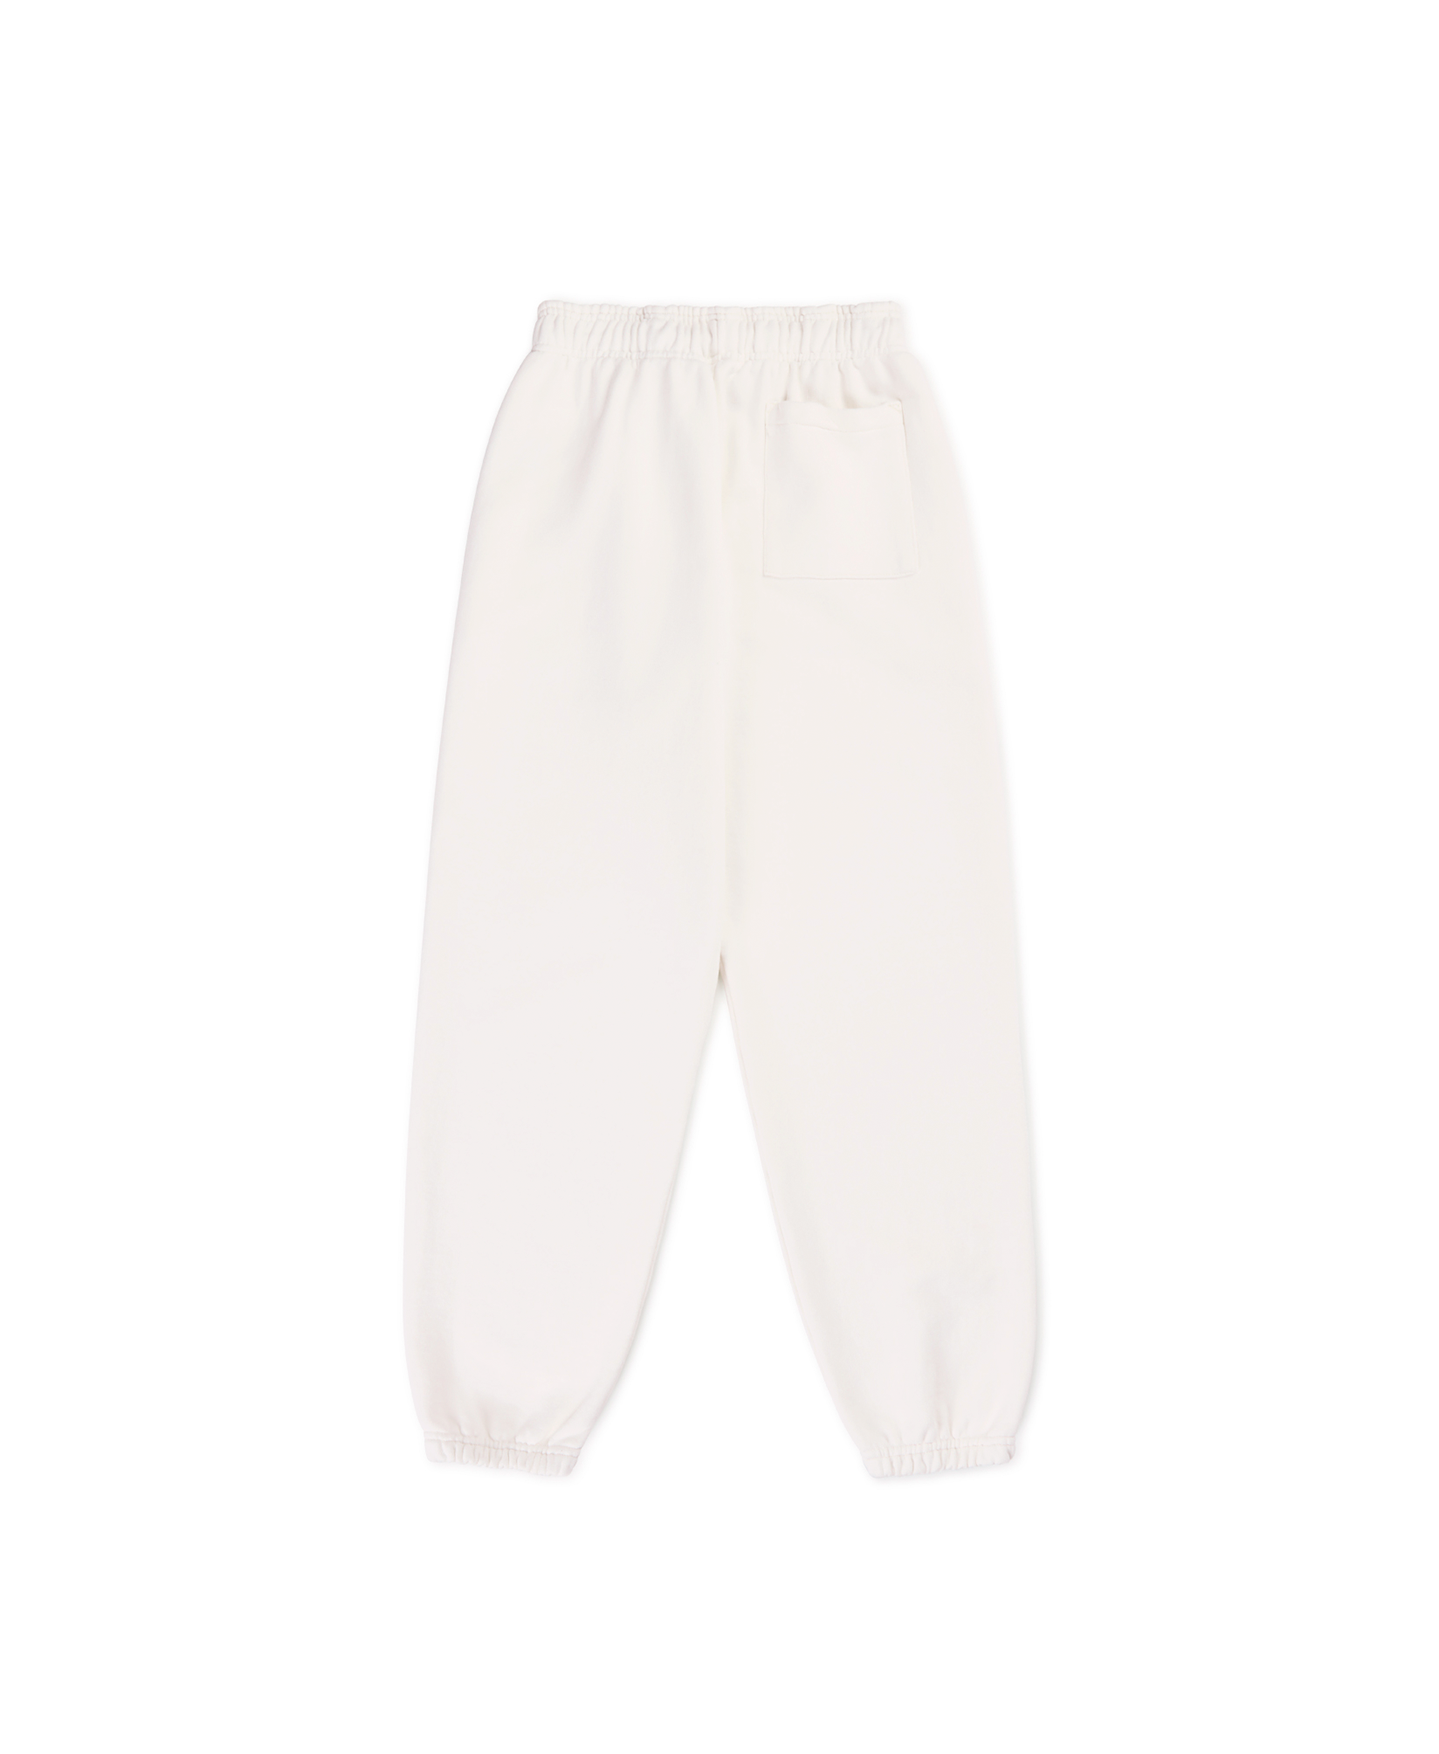 600 GSM 'Bone White' Sweatpants – Velour Garments